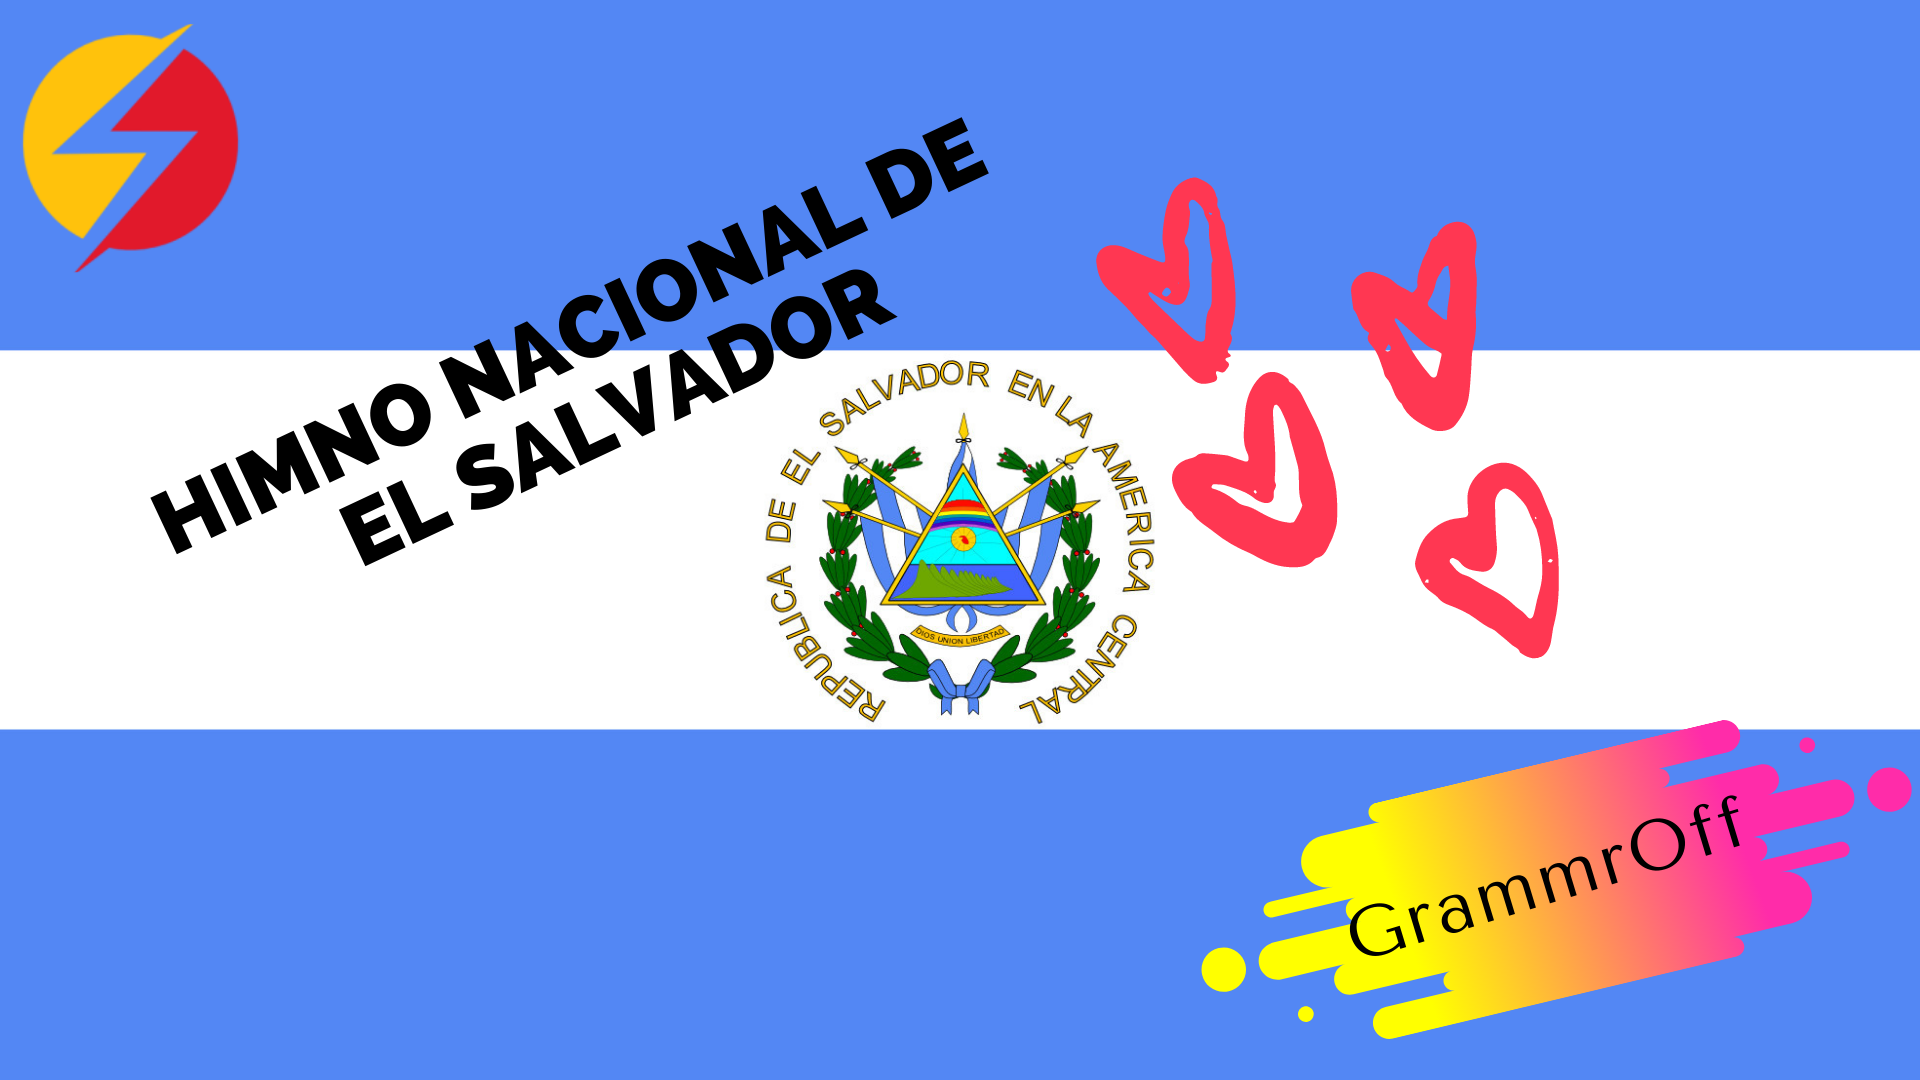 Himno Nacional de El Salvador - Official Website - SpanishOfficial